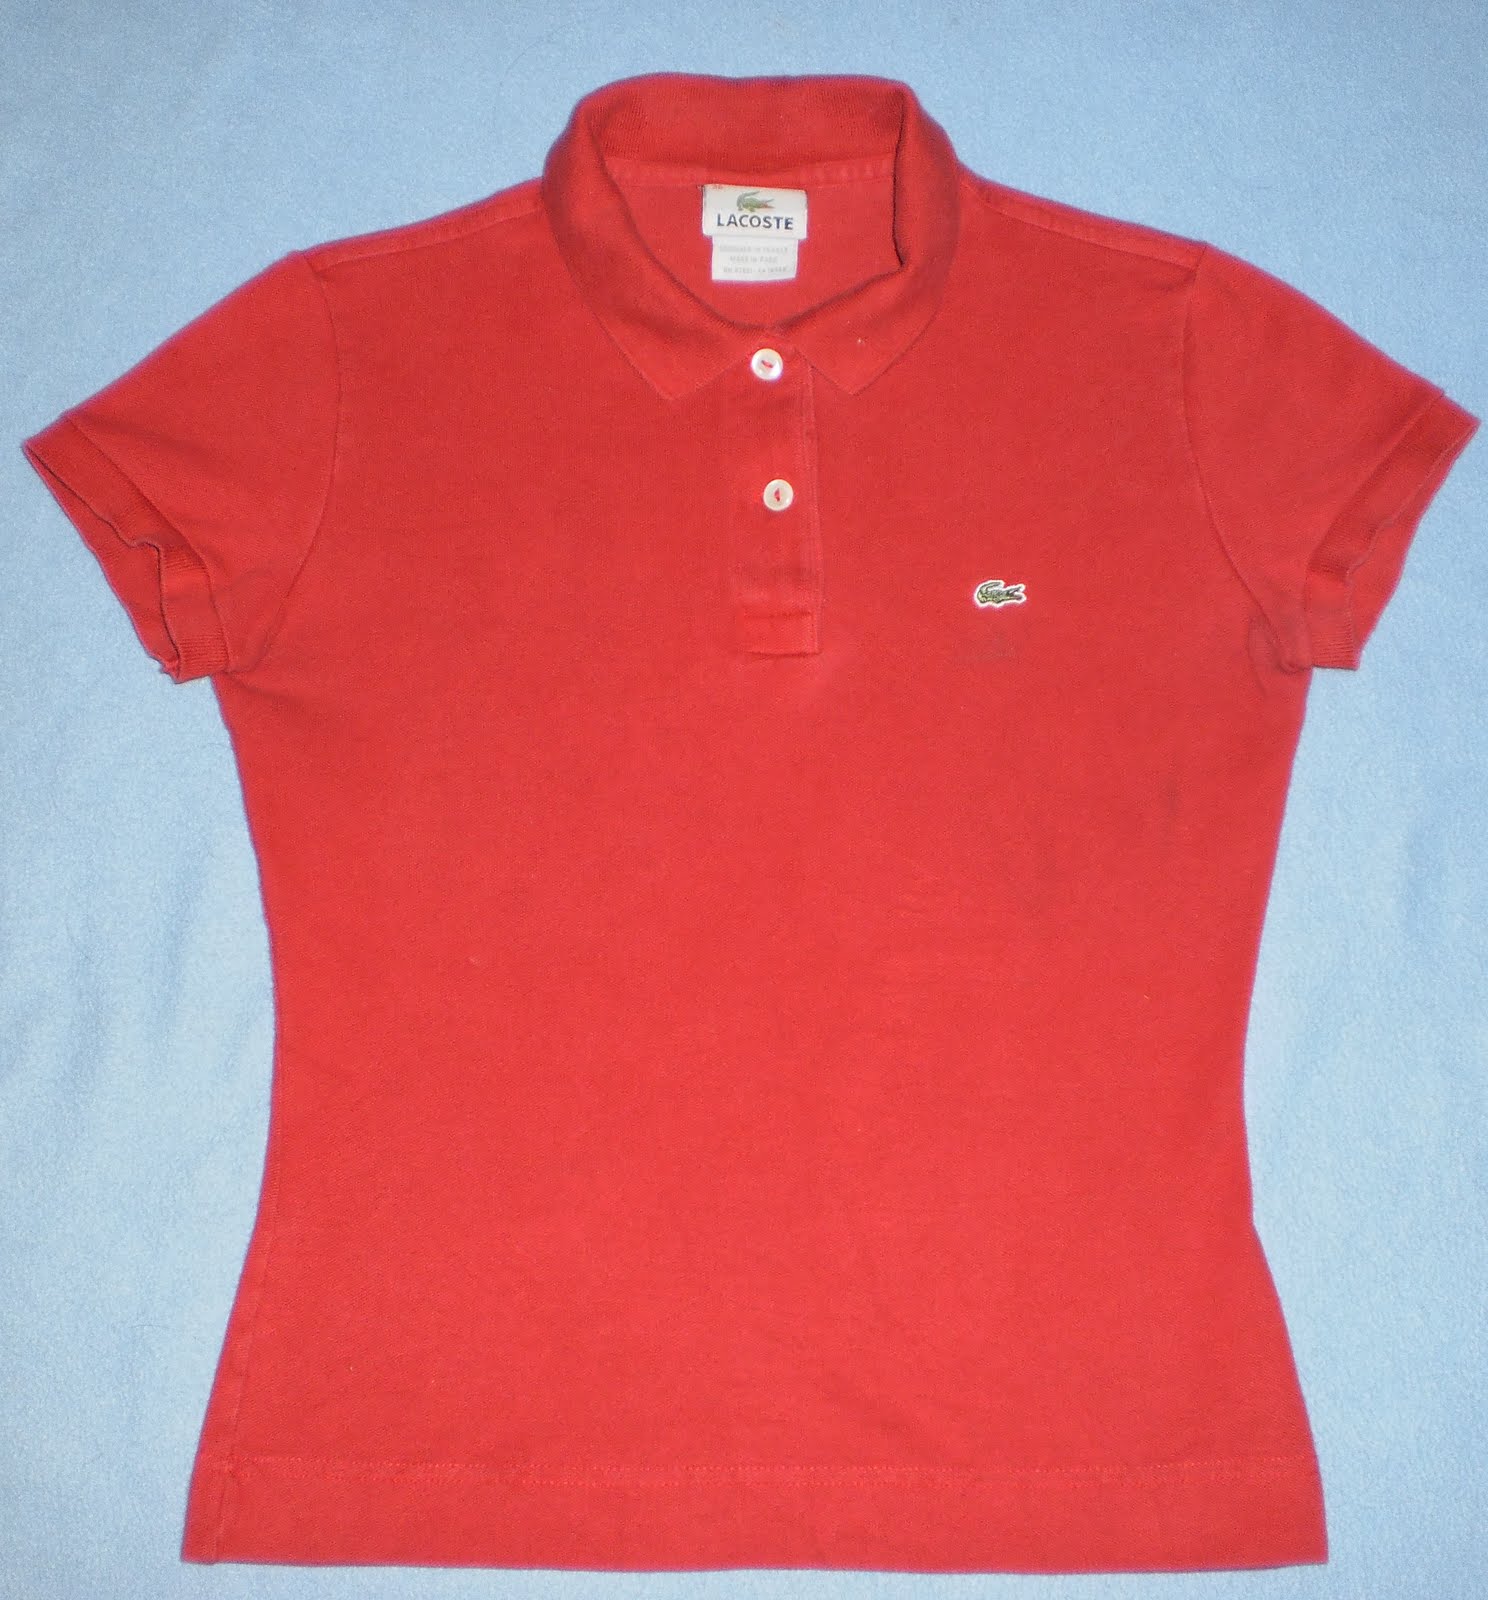 ThirteenShop: Original Lacoste shirt for girl